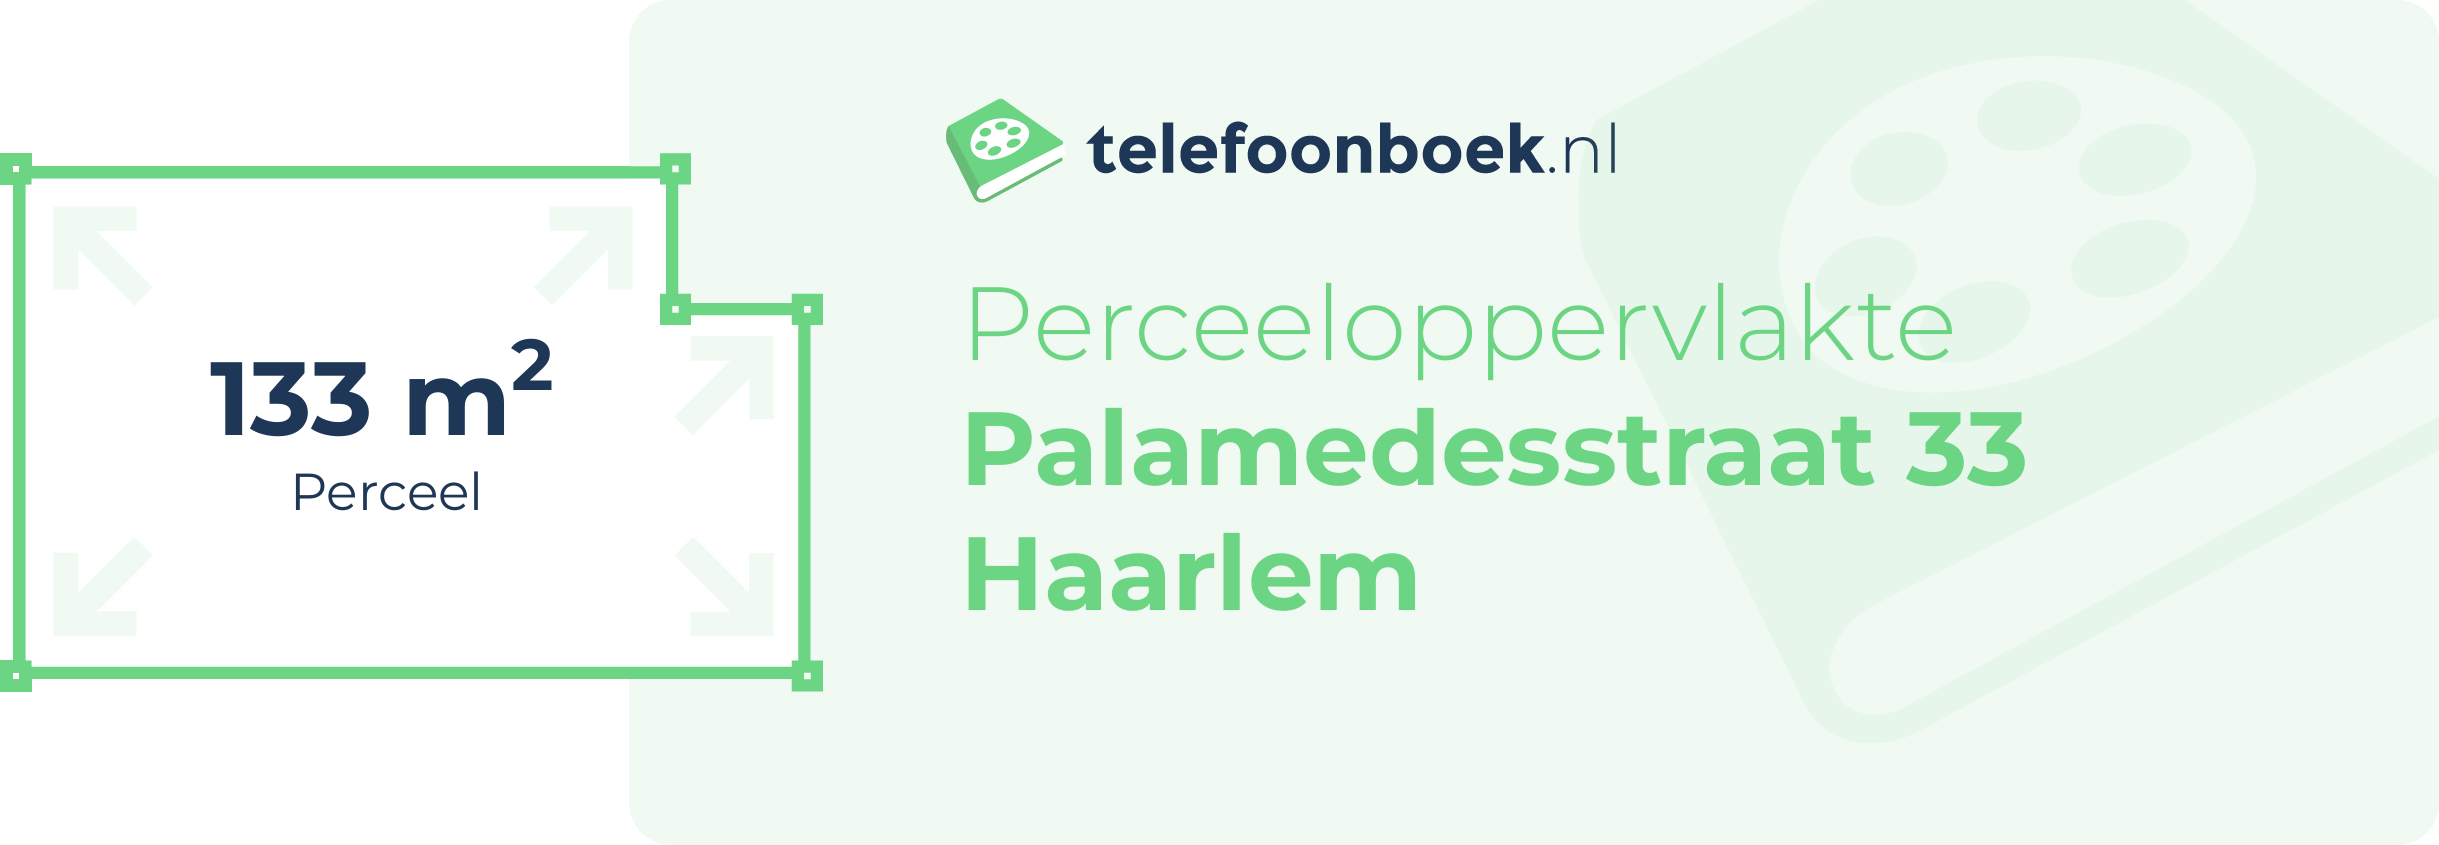 Perceeloppervlakte Palamedesstraat 33 Haarlem